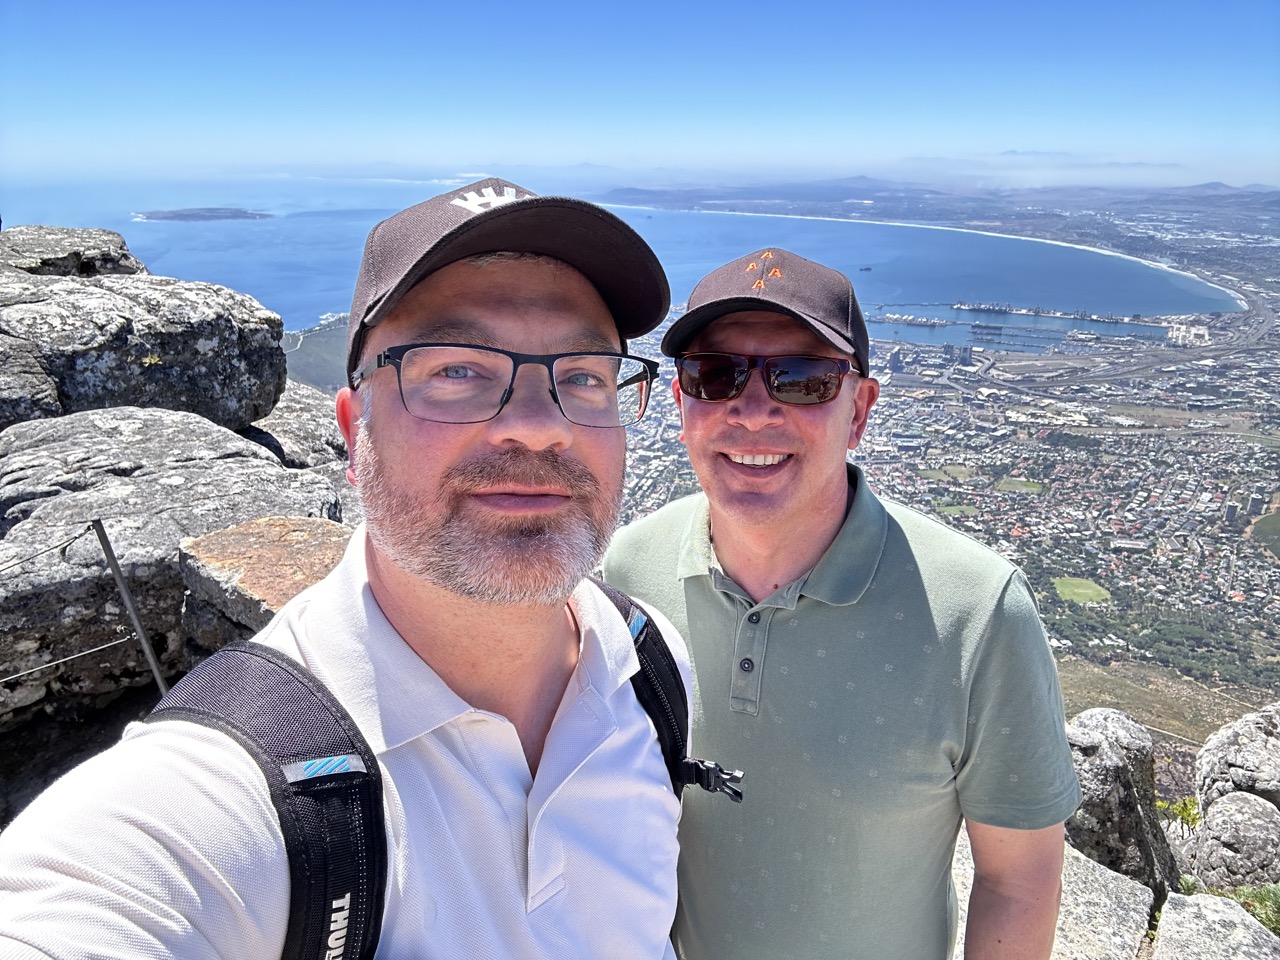 Obligatorisches Selfie auf dem Tafelberg